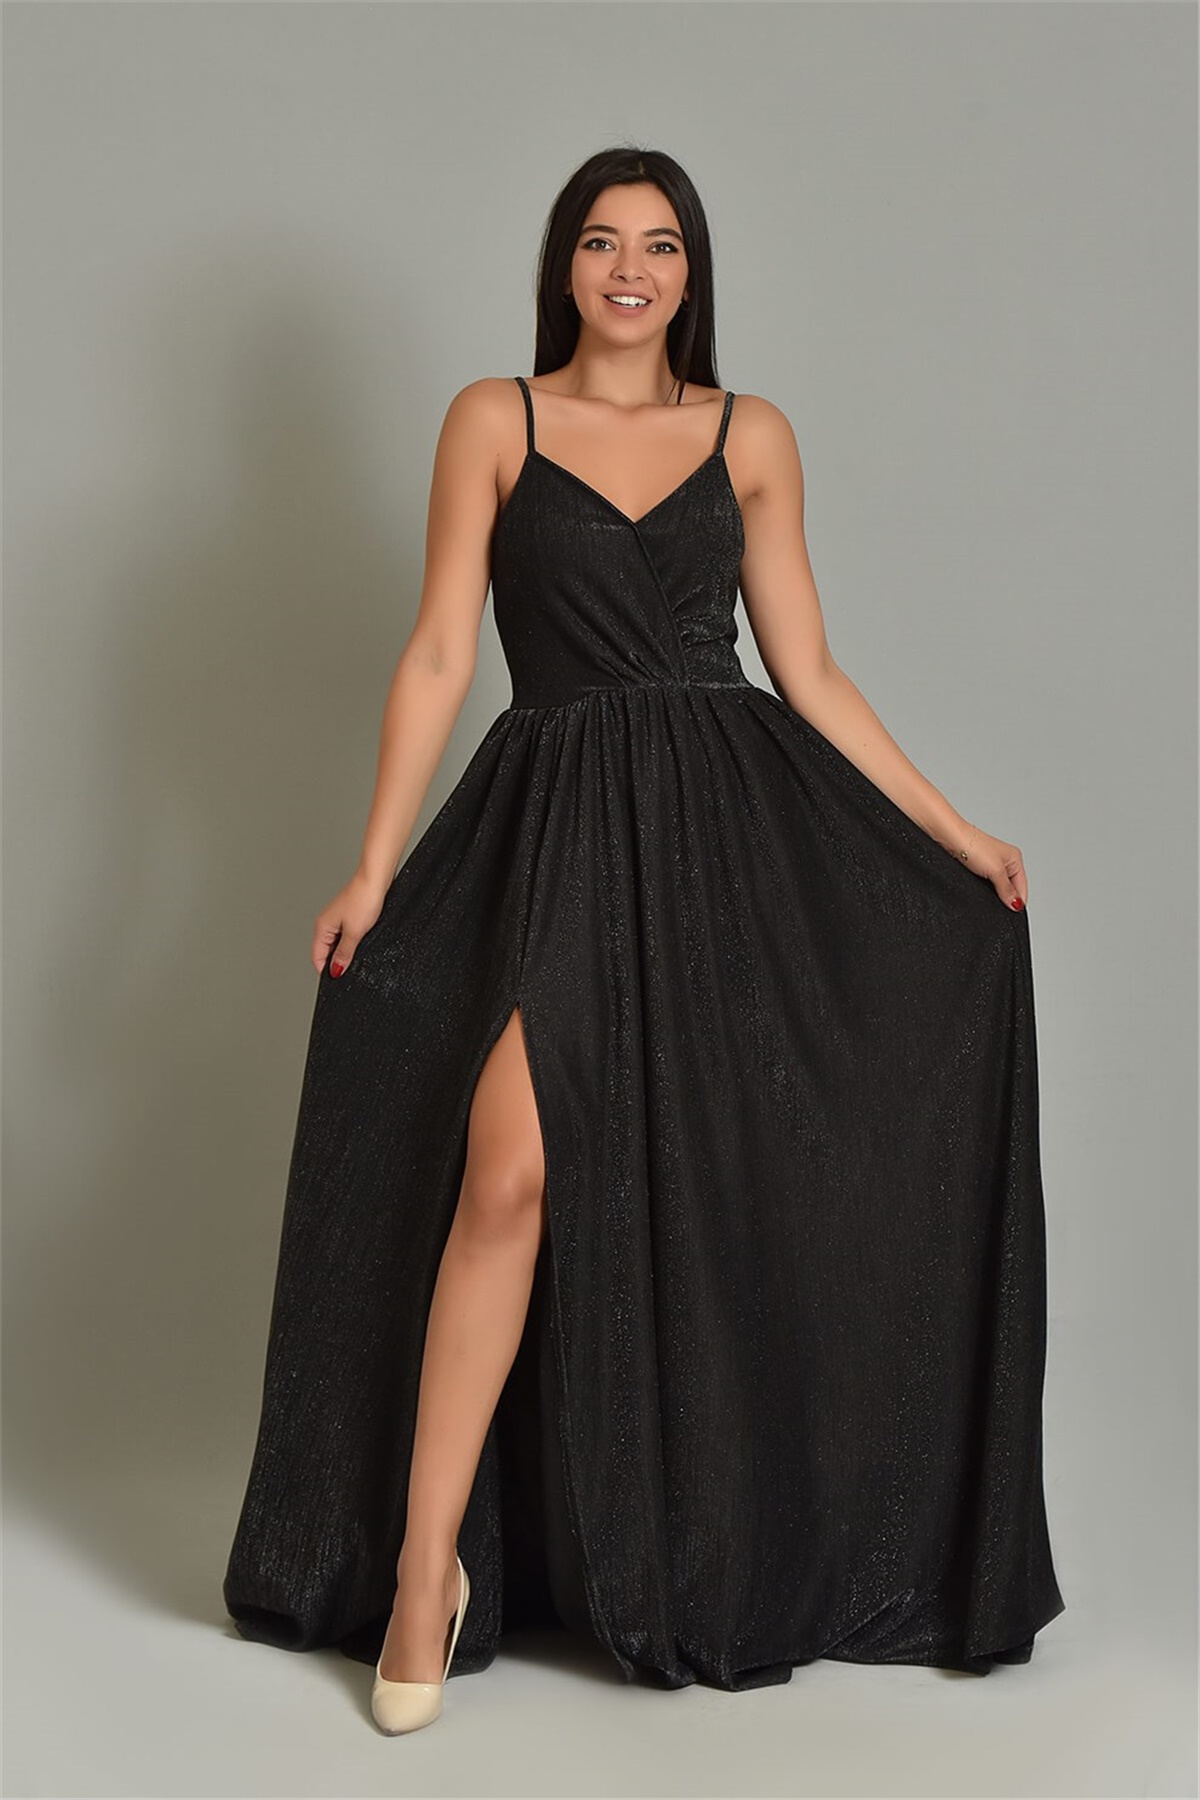 Siyah İp Askılı Simli Kumaş Yırtmaçlı Abiye Elbise - Moda Kapımda İle  Kapınızda!